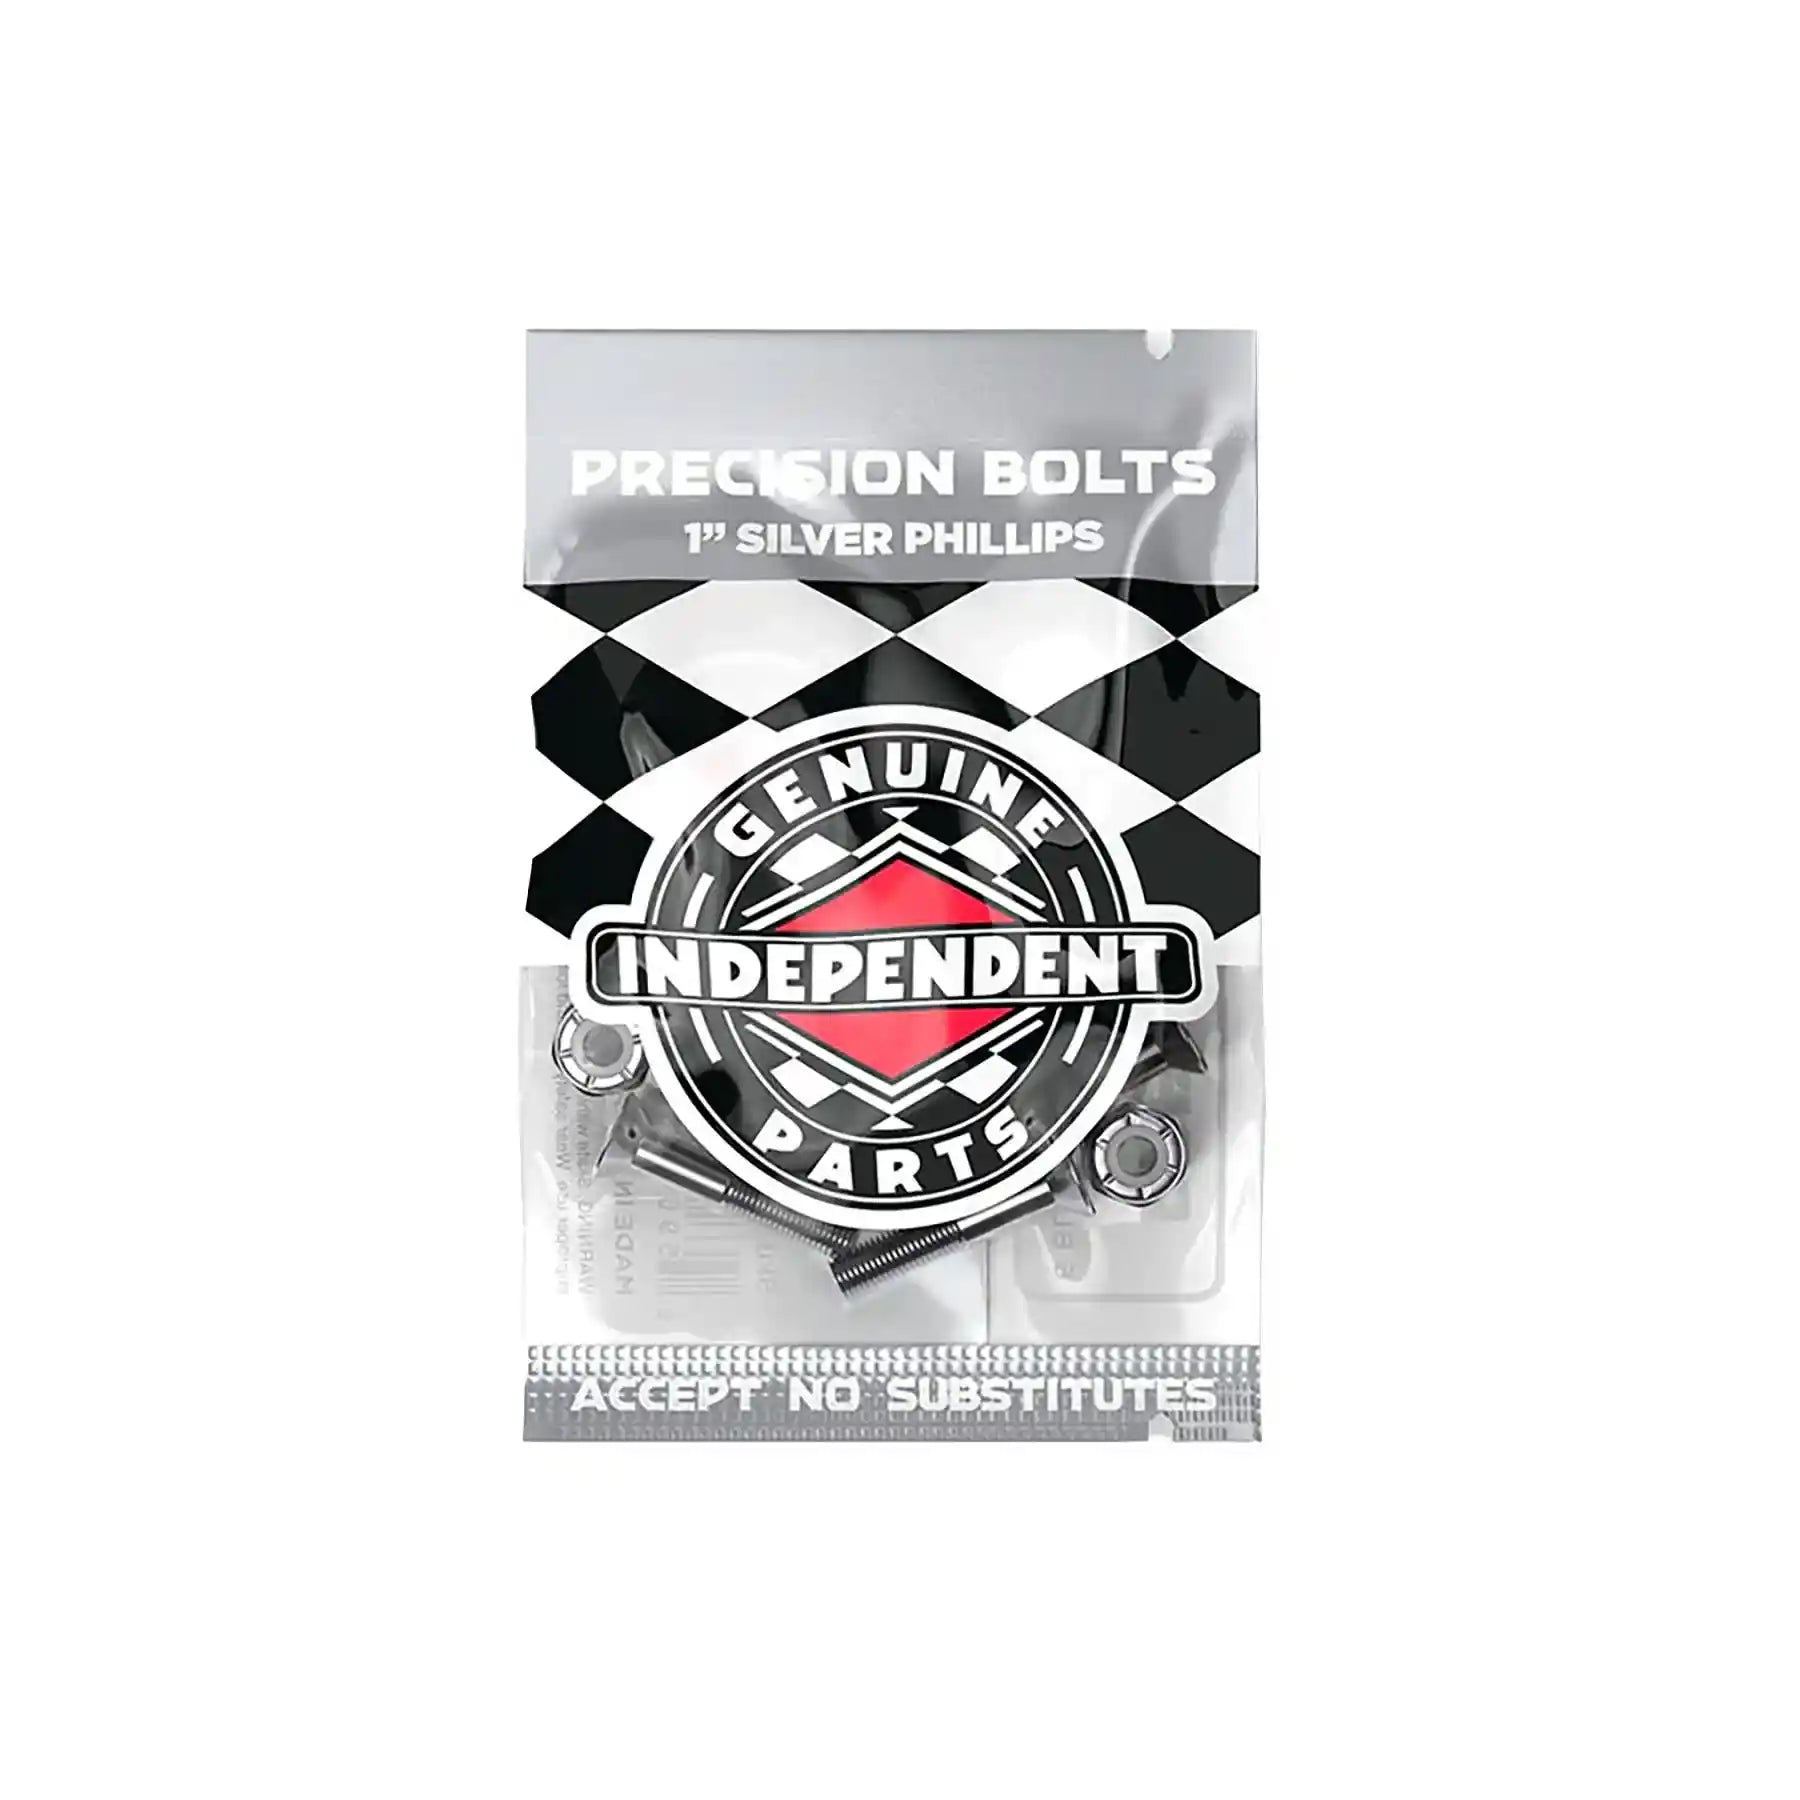 Independent Indy Hardware Phillips 1", black/silver - Tiki Room Skateboards - 2